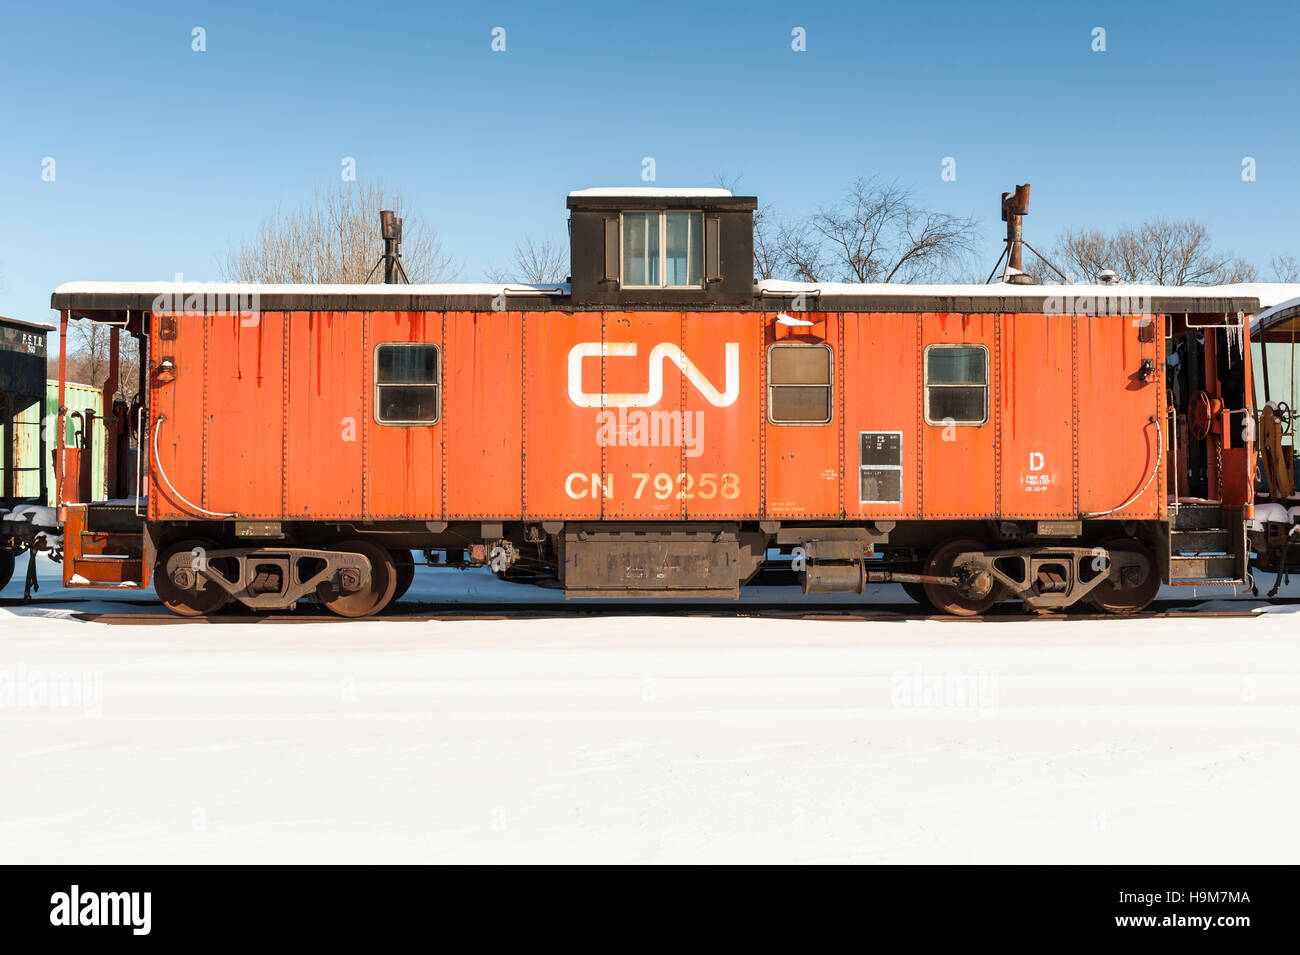 Alte Farbe orange Canadian National Railway Caboose geparkt auf dem Hof im Winter Stockfoto